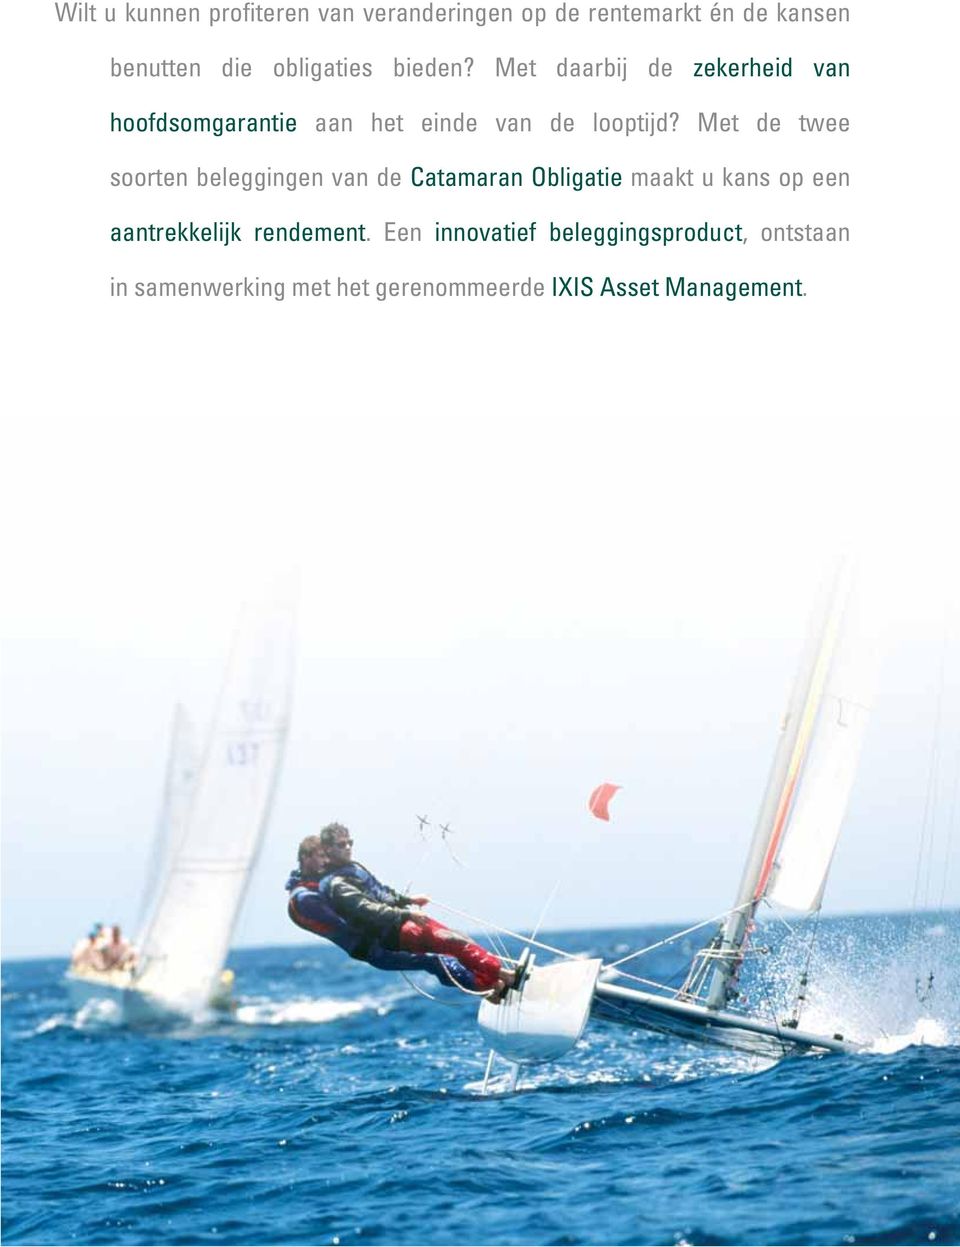 Met de twee soorten beleggingen van de Catamaran Obligatie maakt u kans op een aantrekkelijk